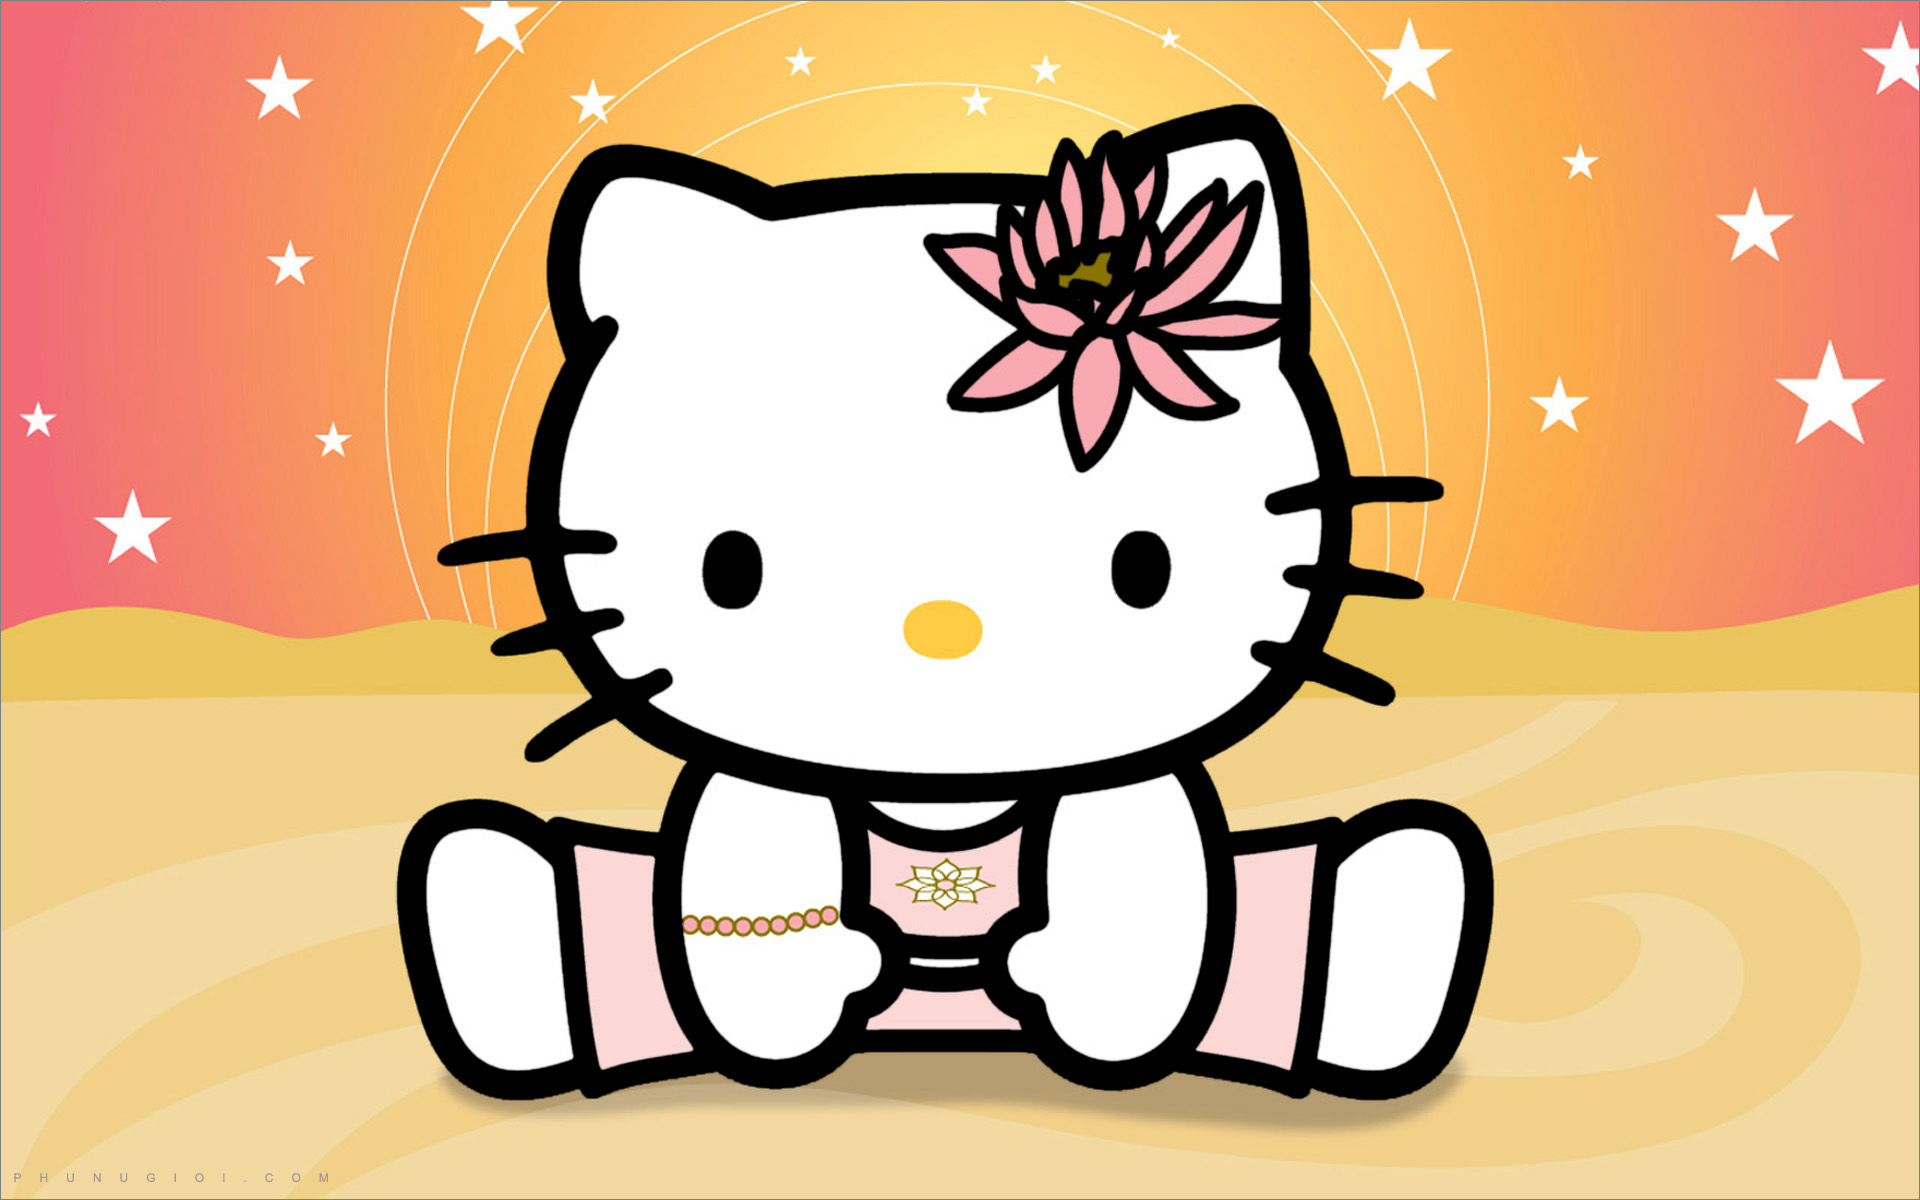 Bộ Hình Nền Hello Kitty Cực Kì Dễ Thương  TRẦN HƯNG ĐẠO